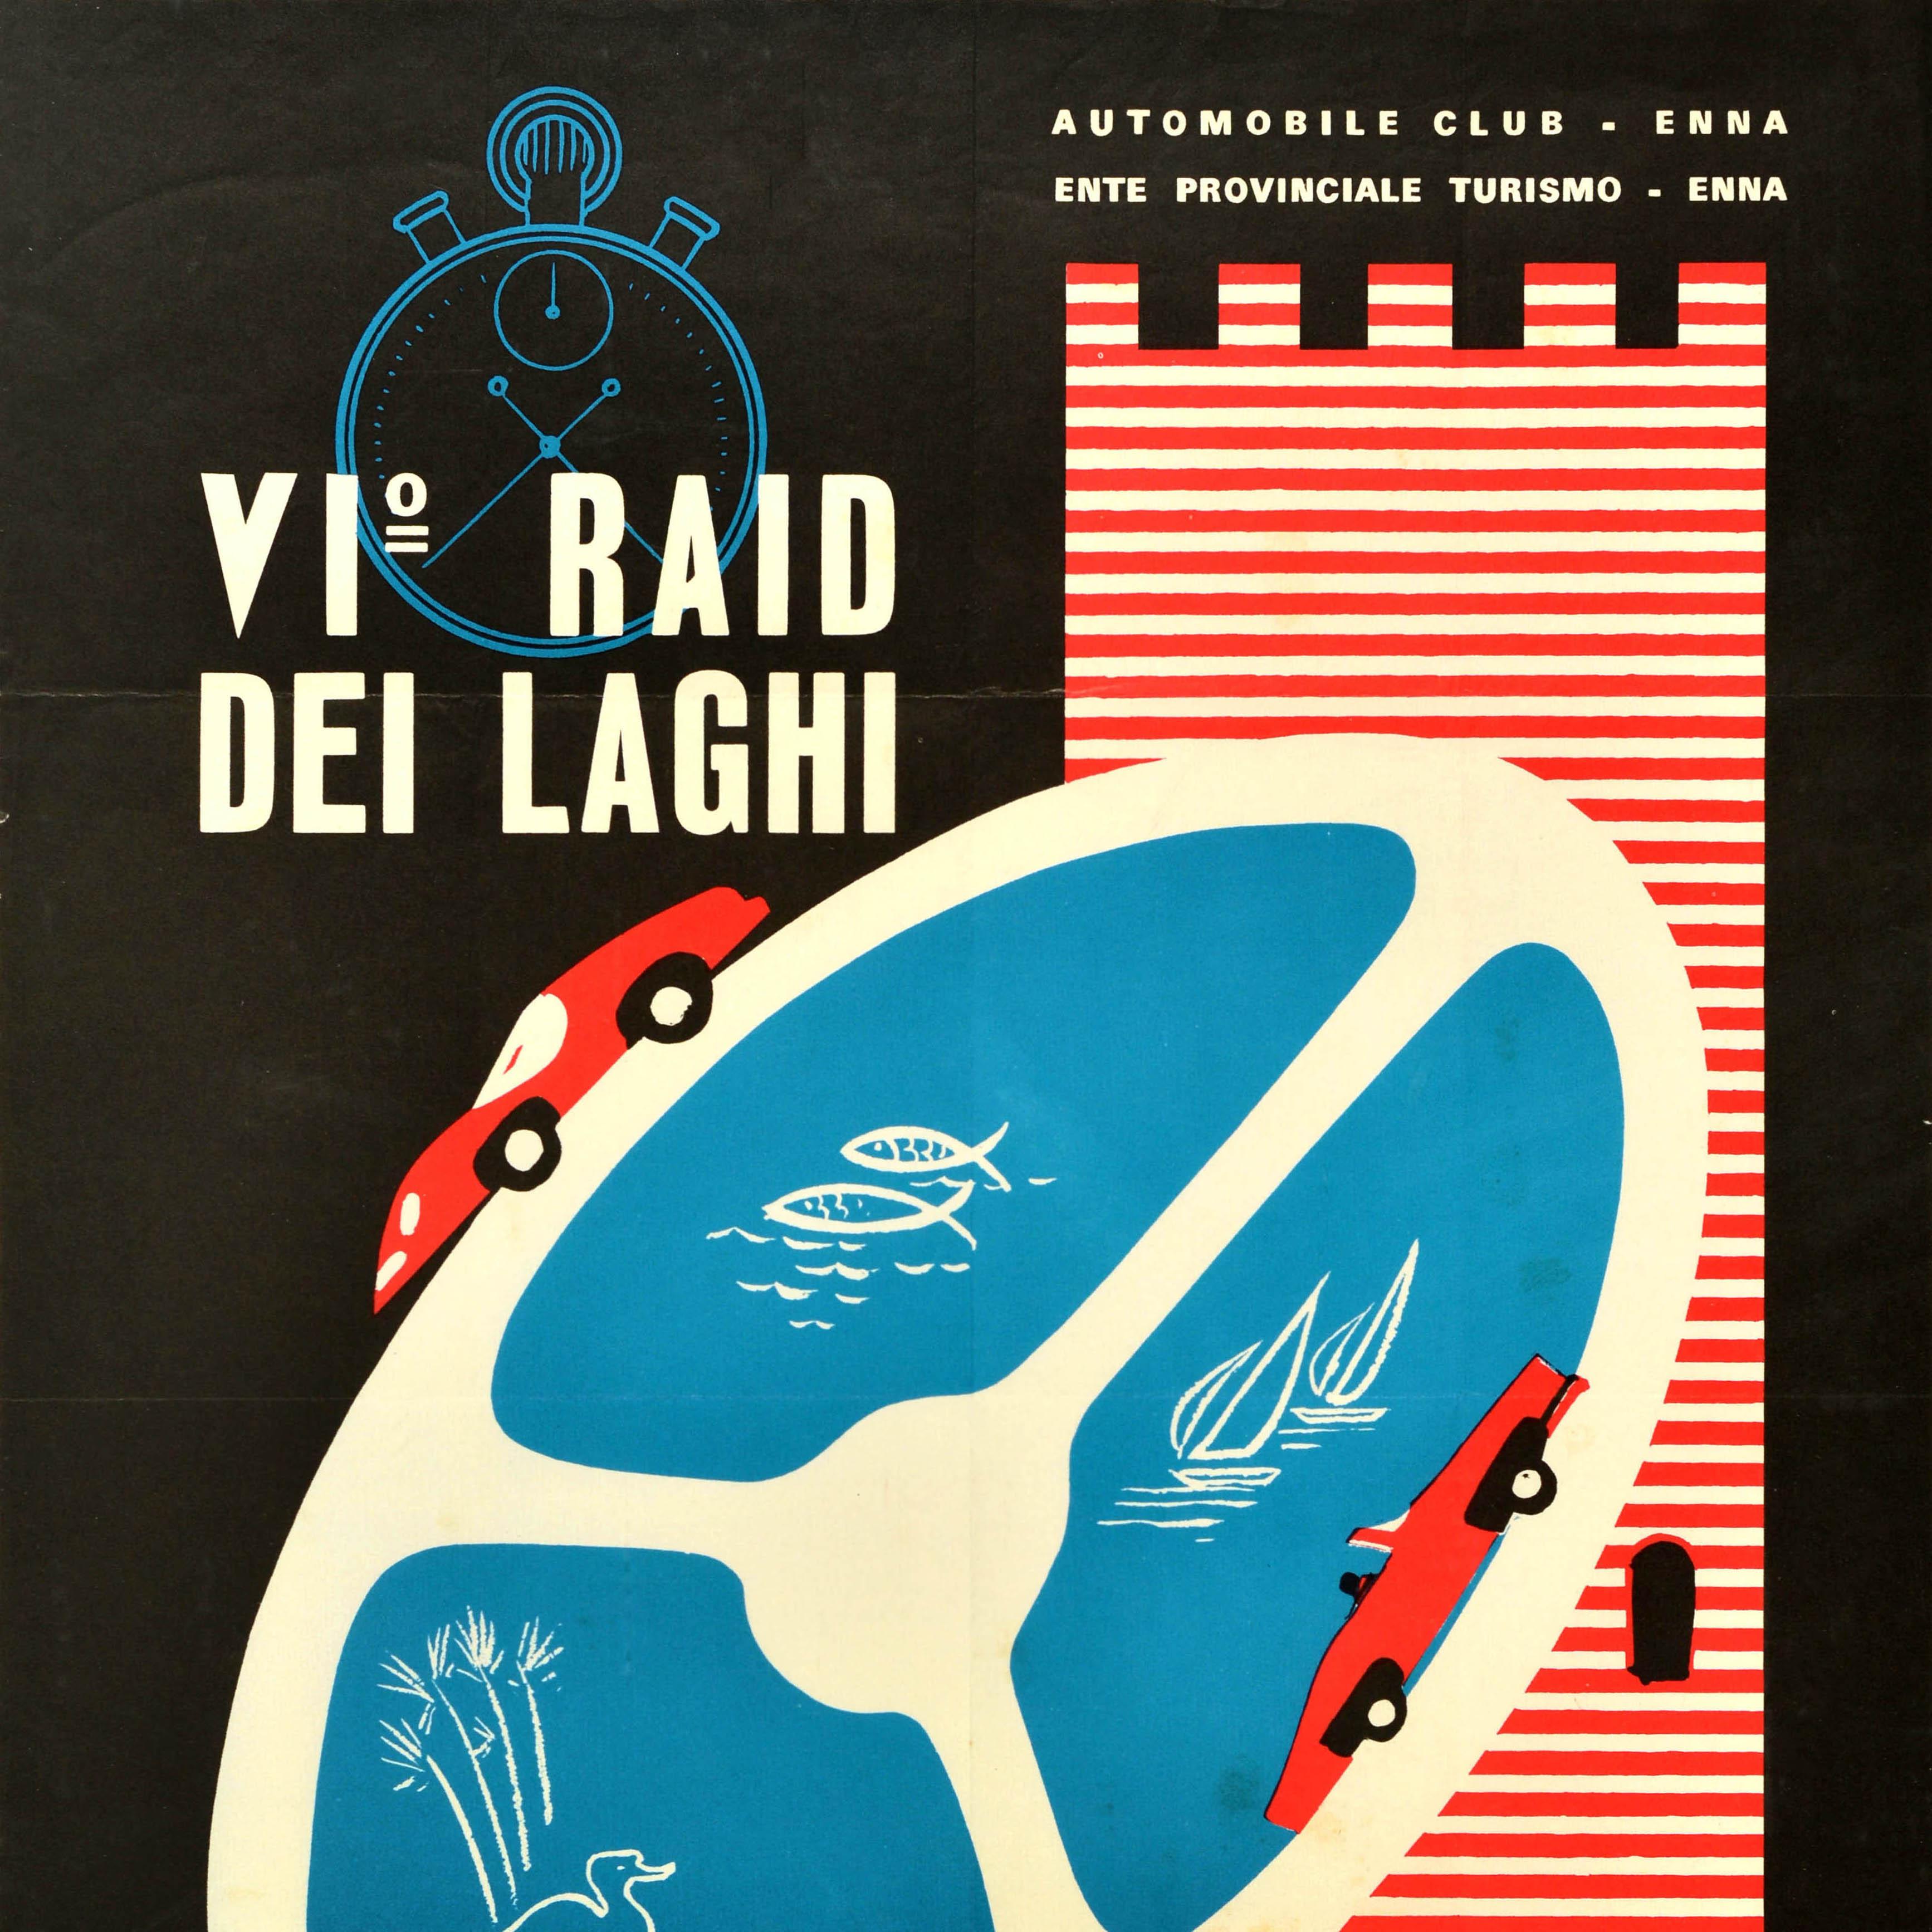 Affiche originale d'événement sportif vintage pour la course automobile VI Raid Dei Laghi organisée par l'Automobile Club d'Enna le 29 juin 1970 présentant un grand graphisme représentant trois voitures de sport rouges faisant la course autour d'un